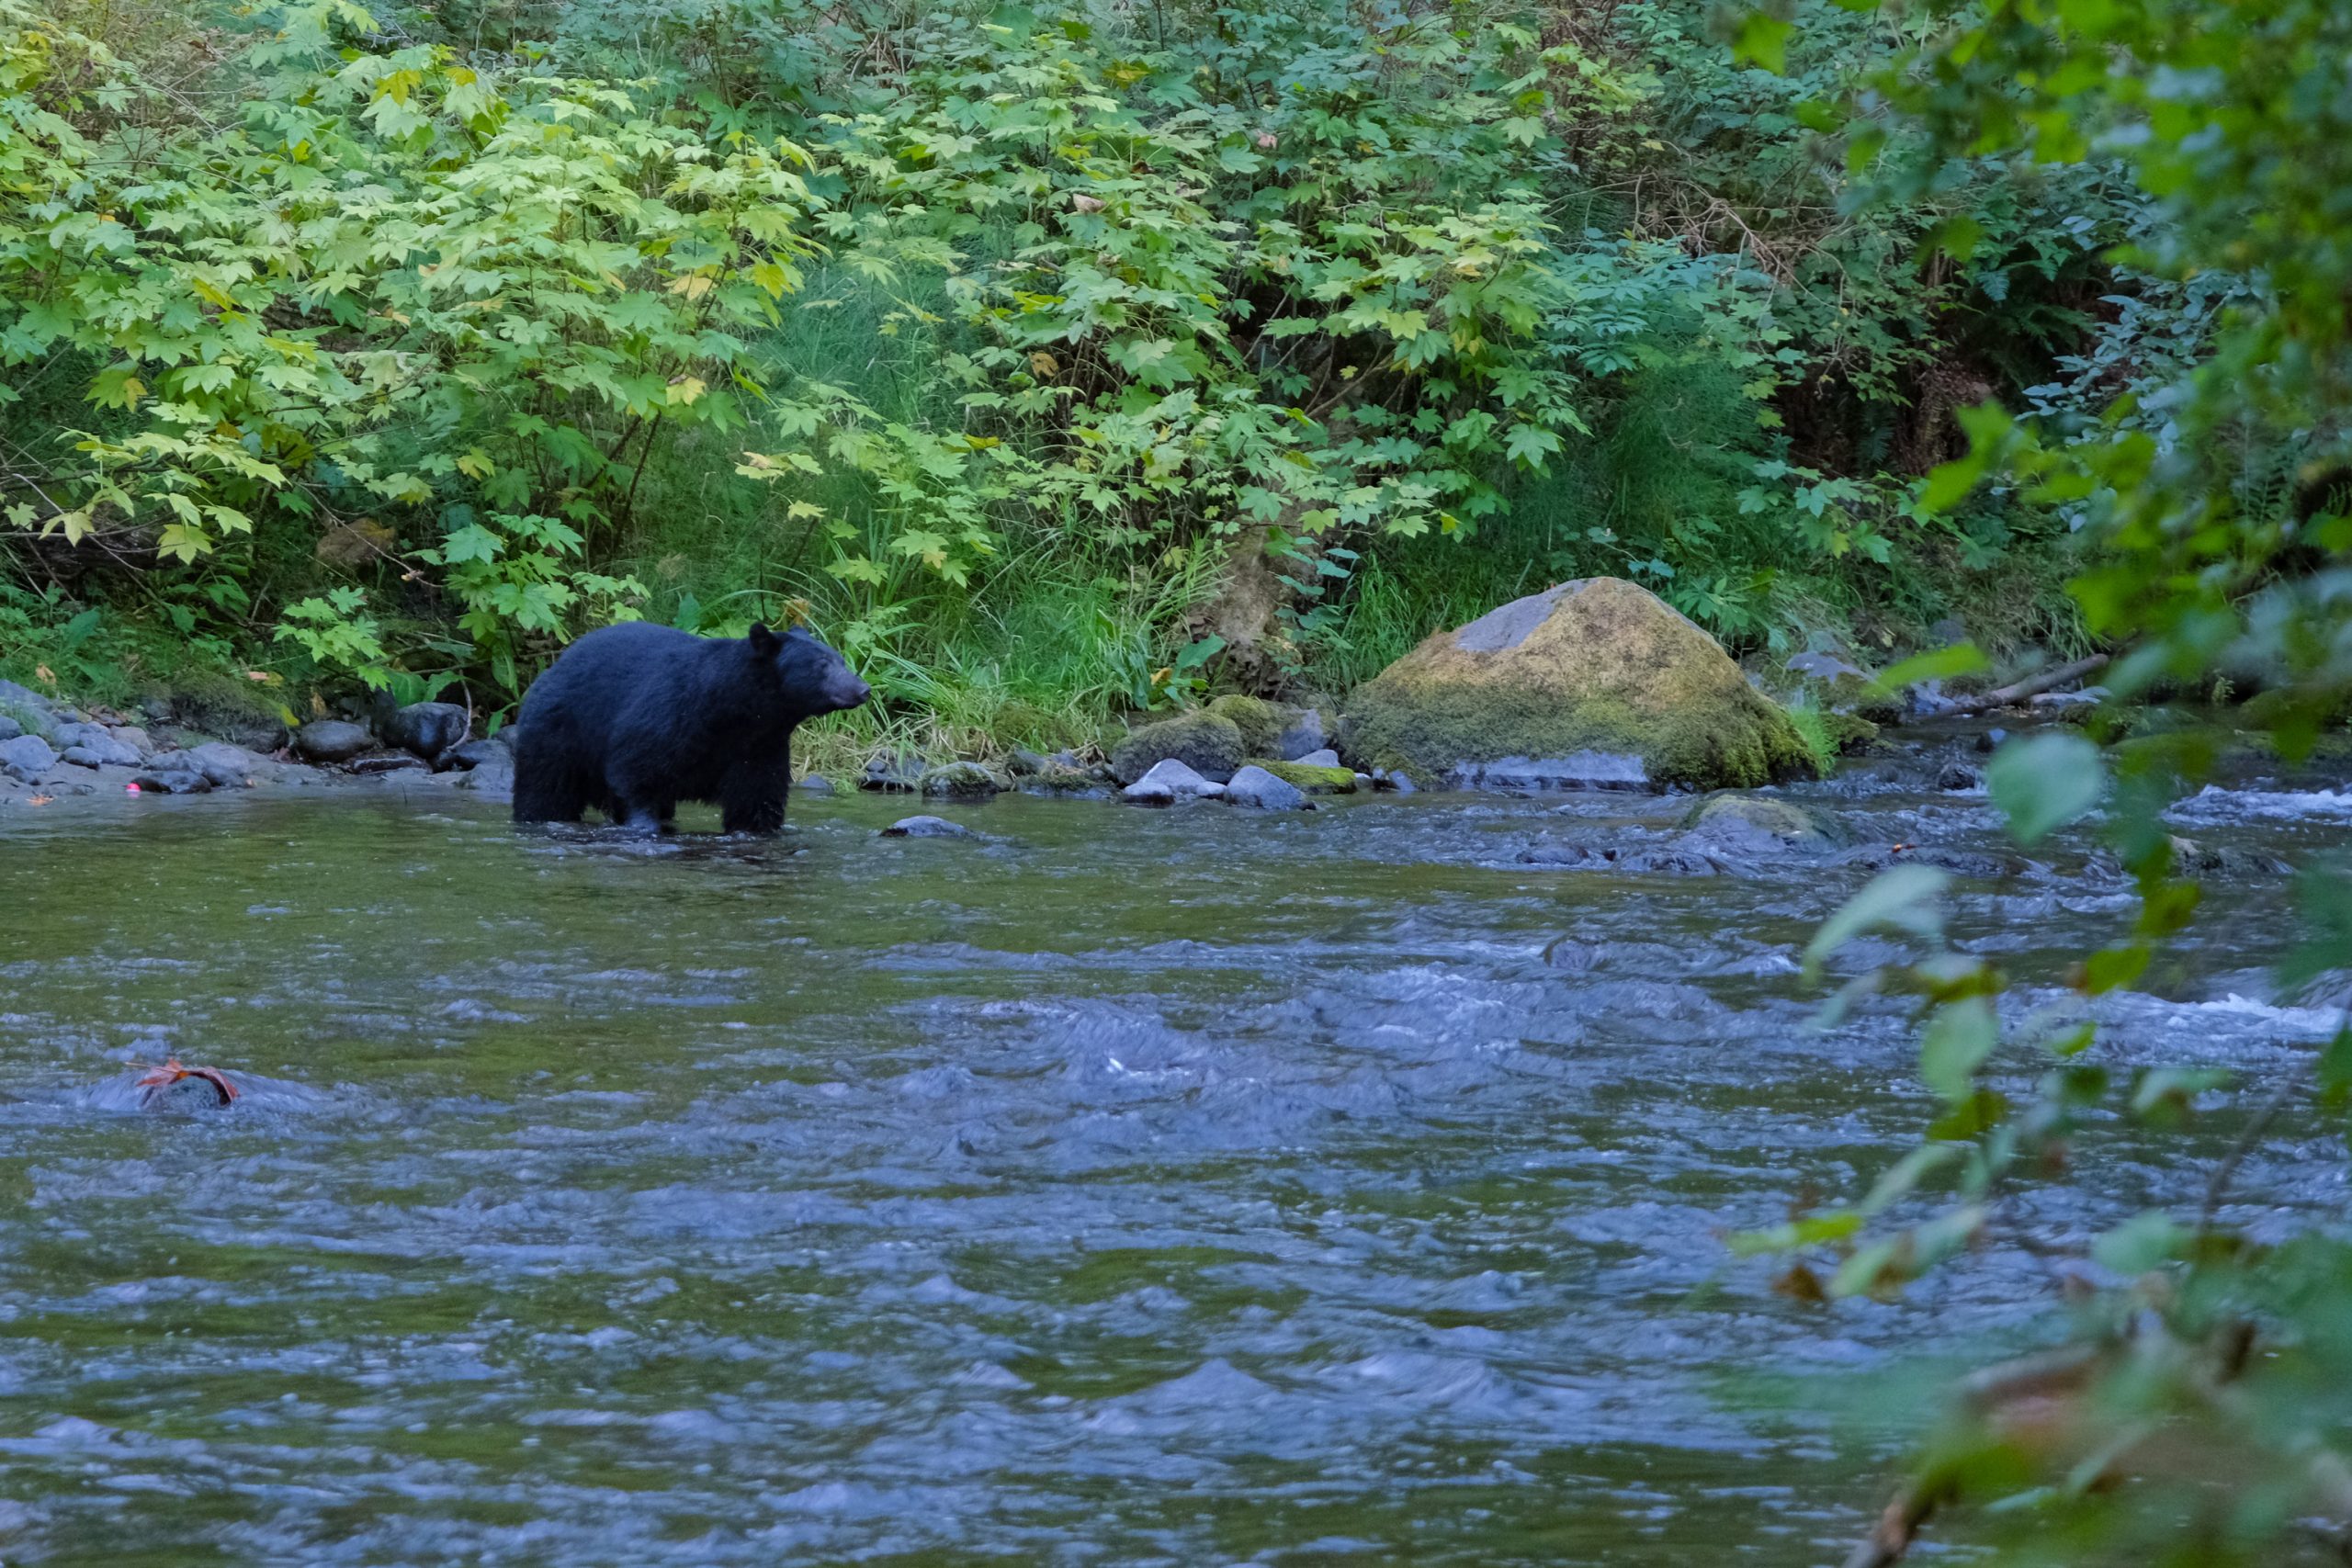 De beer ruikt en snuffelt, op zoek naar voedsel | Beren spotten in Campbell River